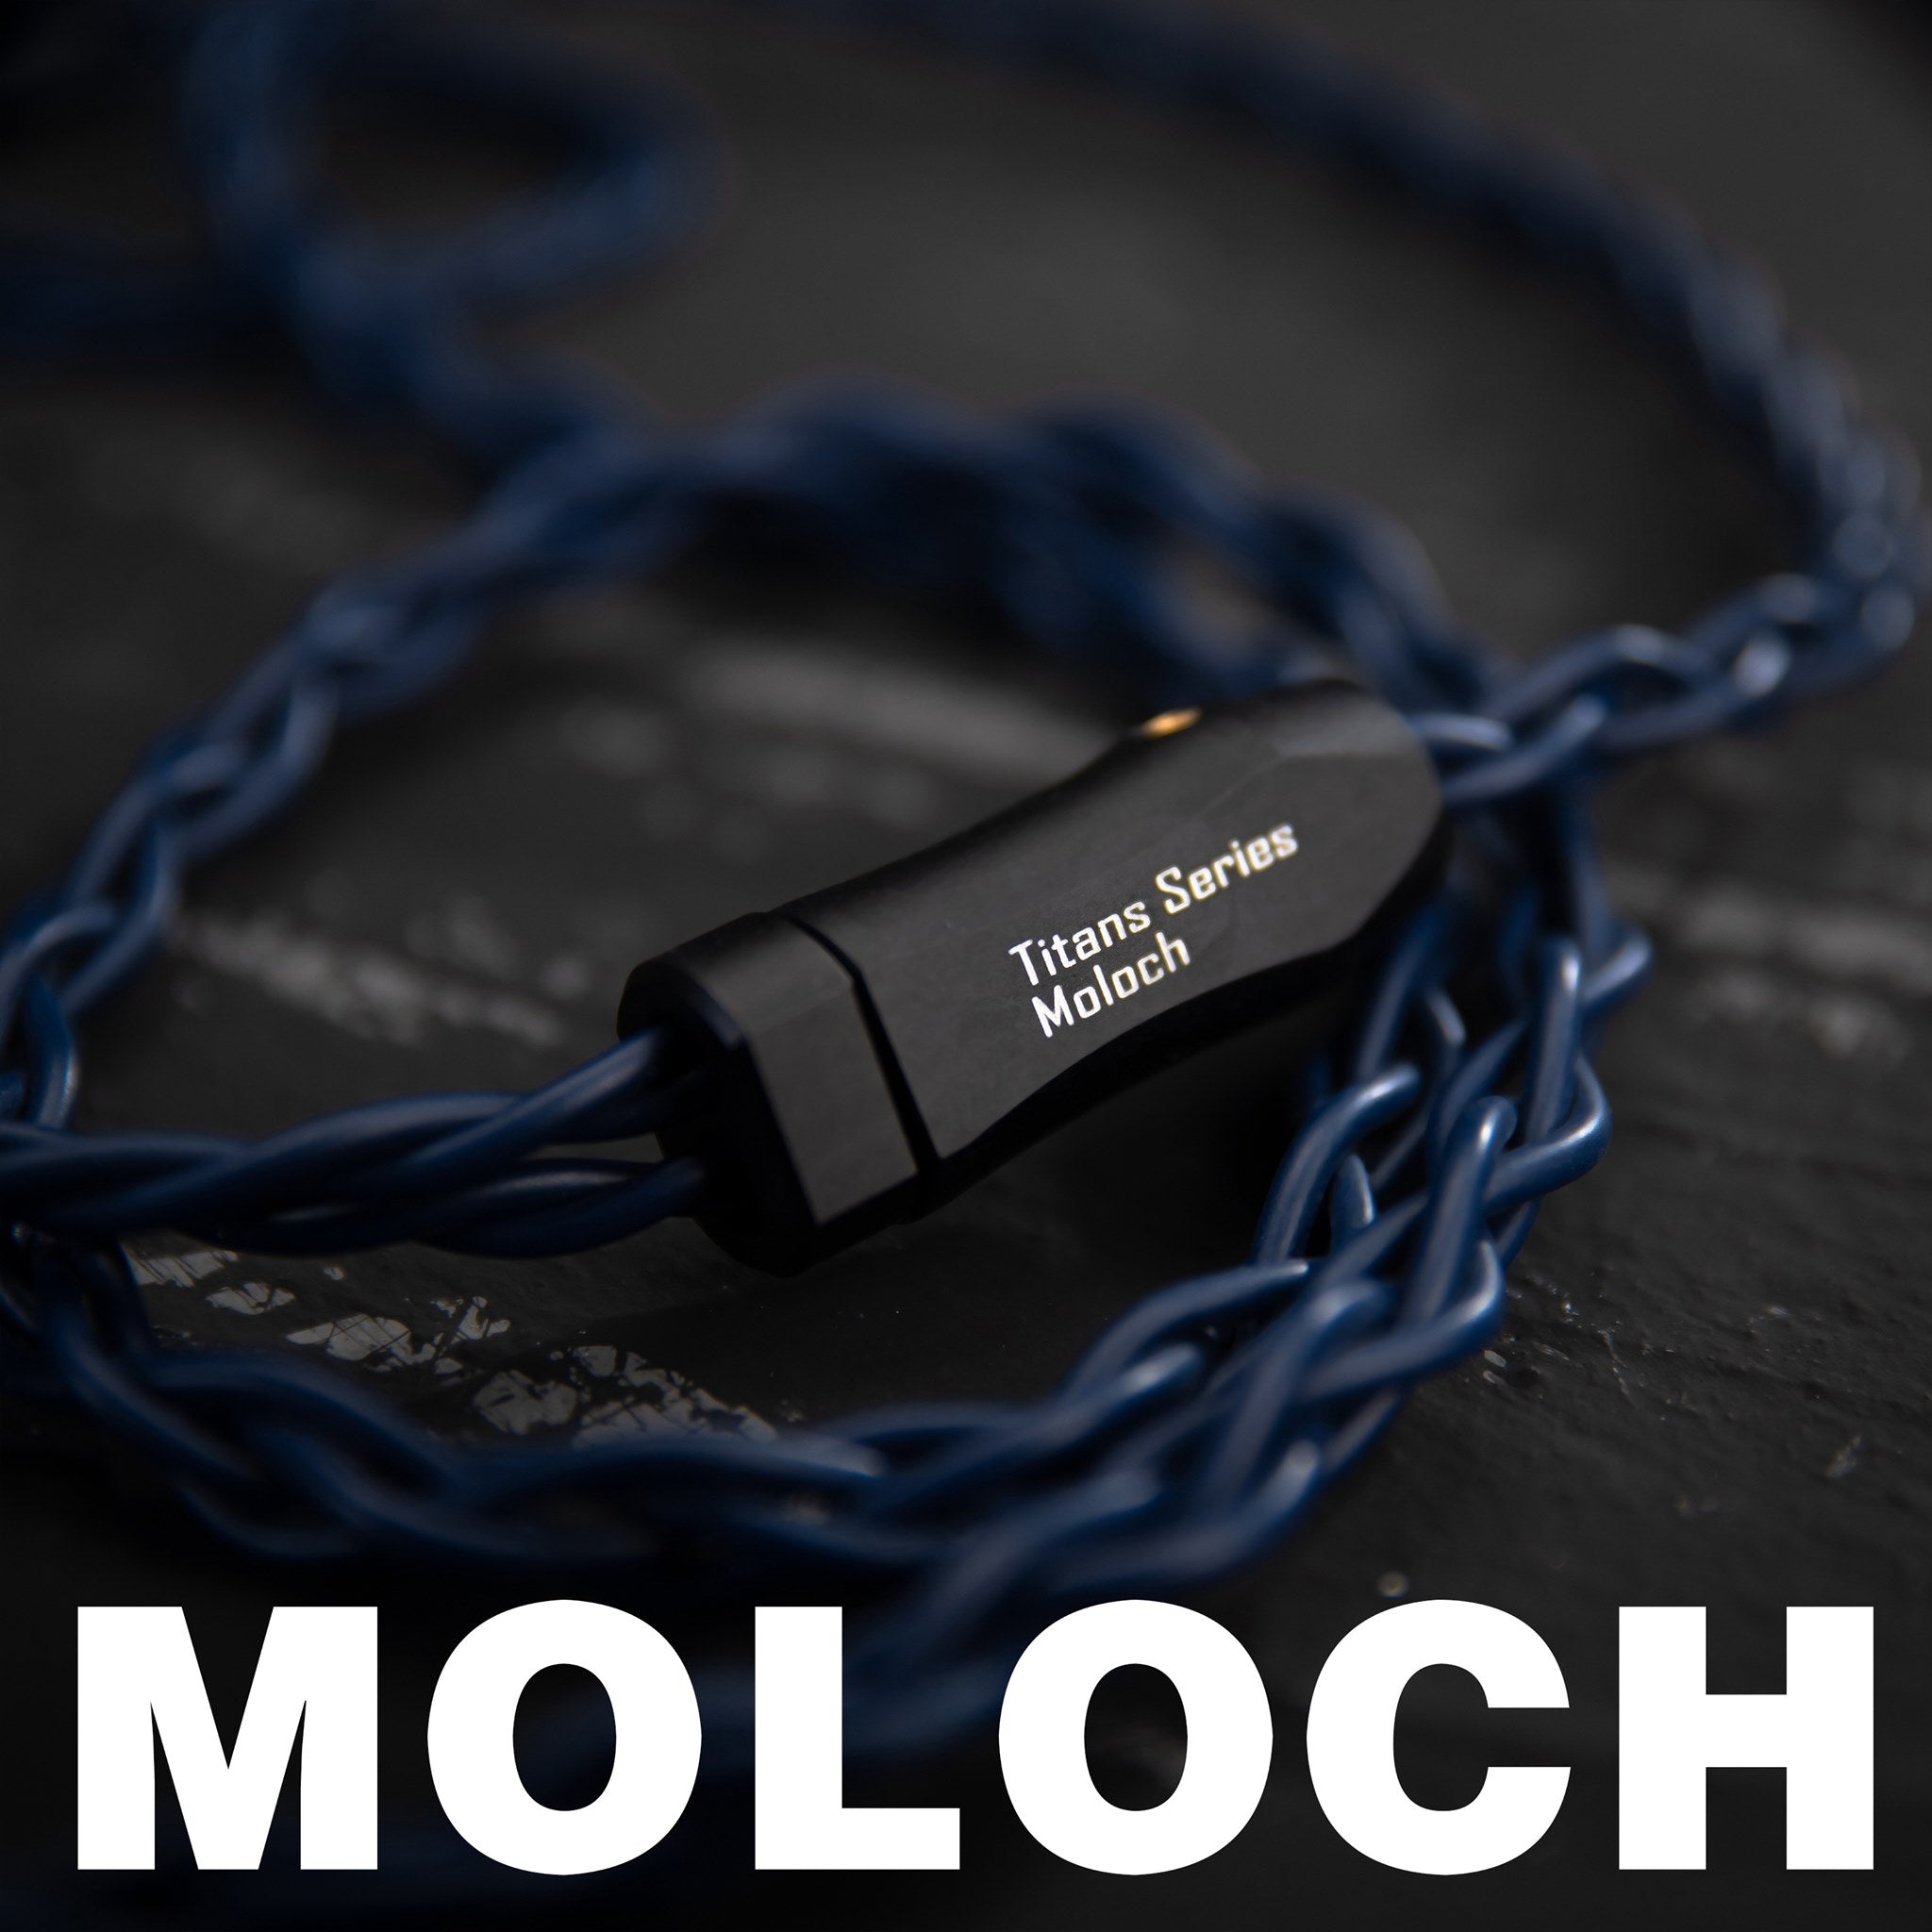 PW Audio Titan シリーズ MOLOCH ヘッドホン アップグレード ケーブル